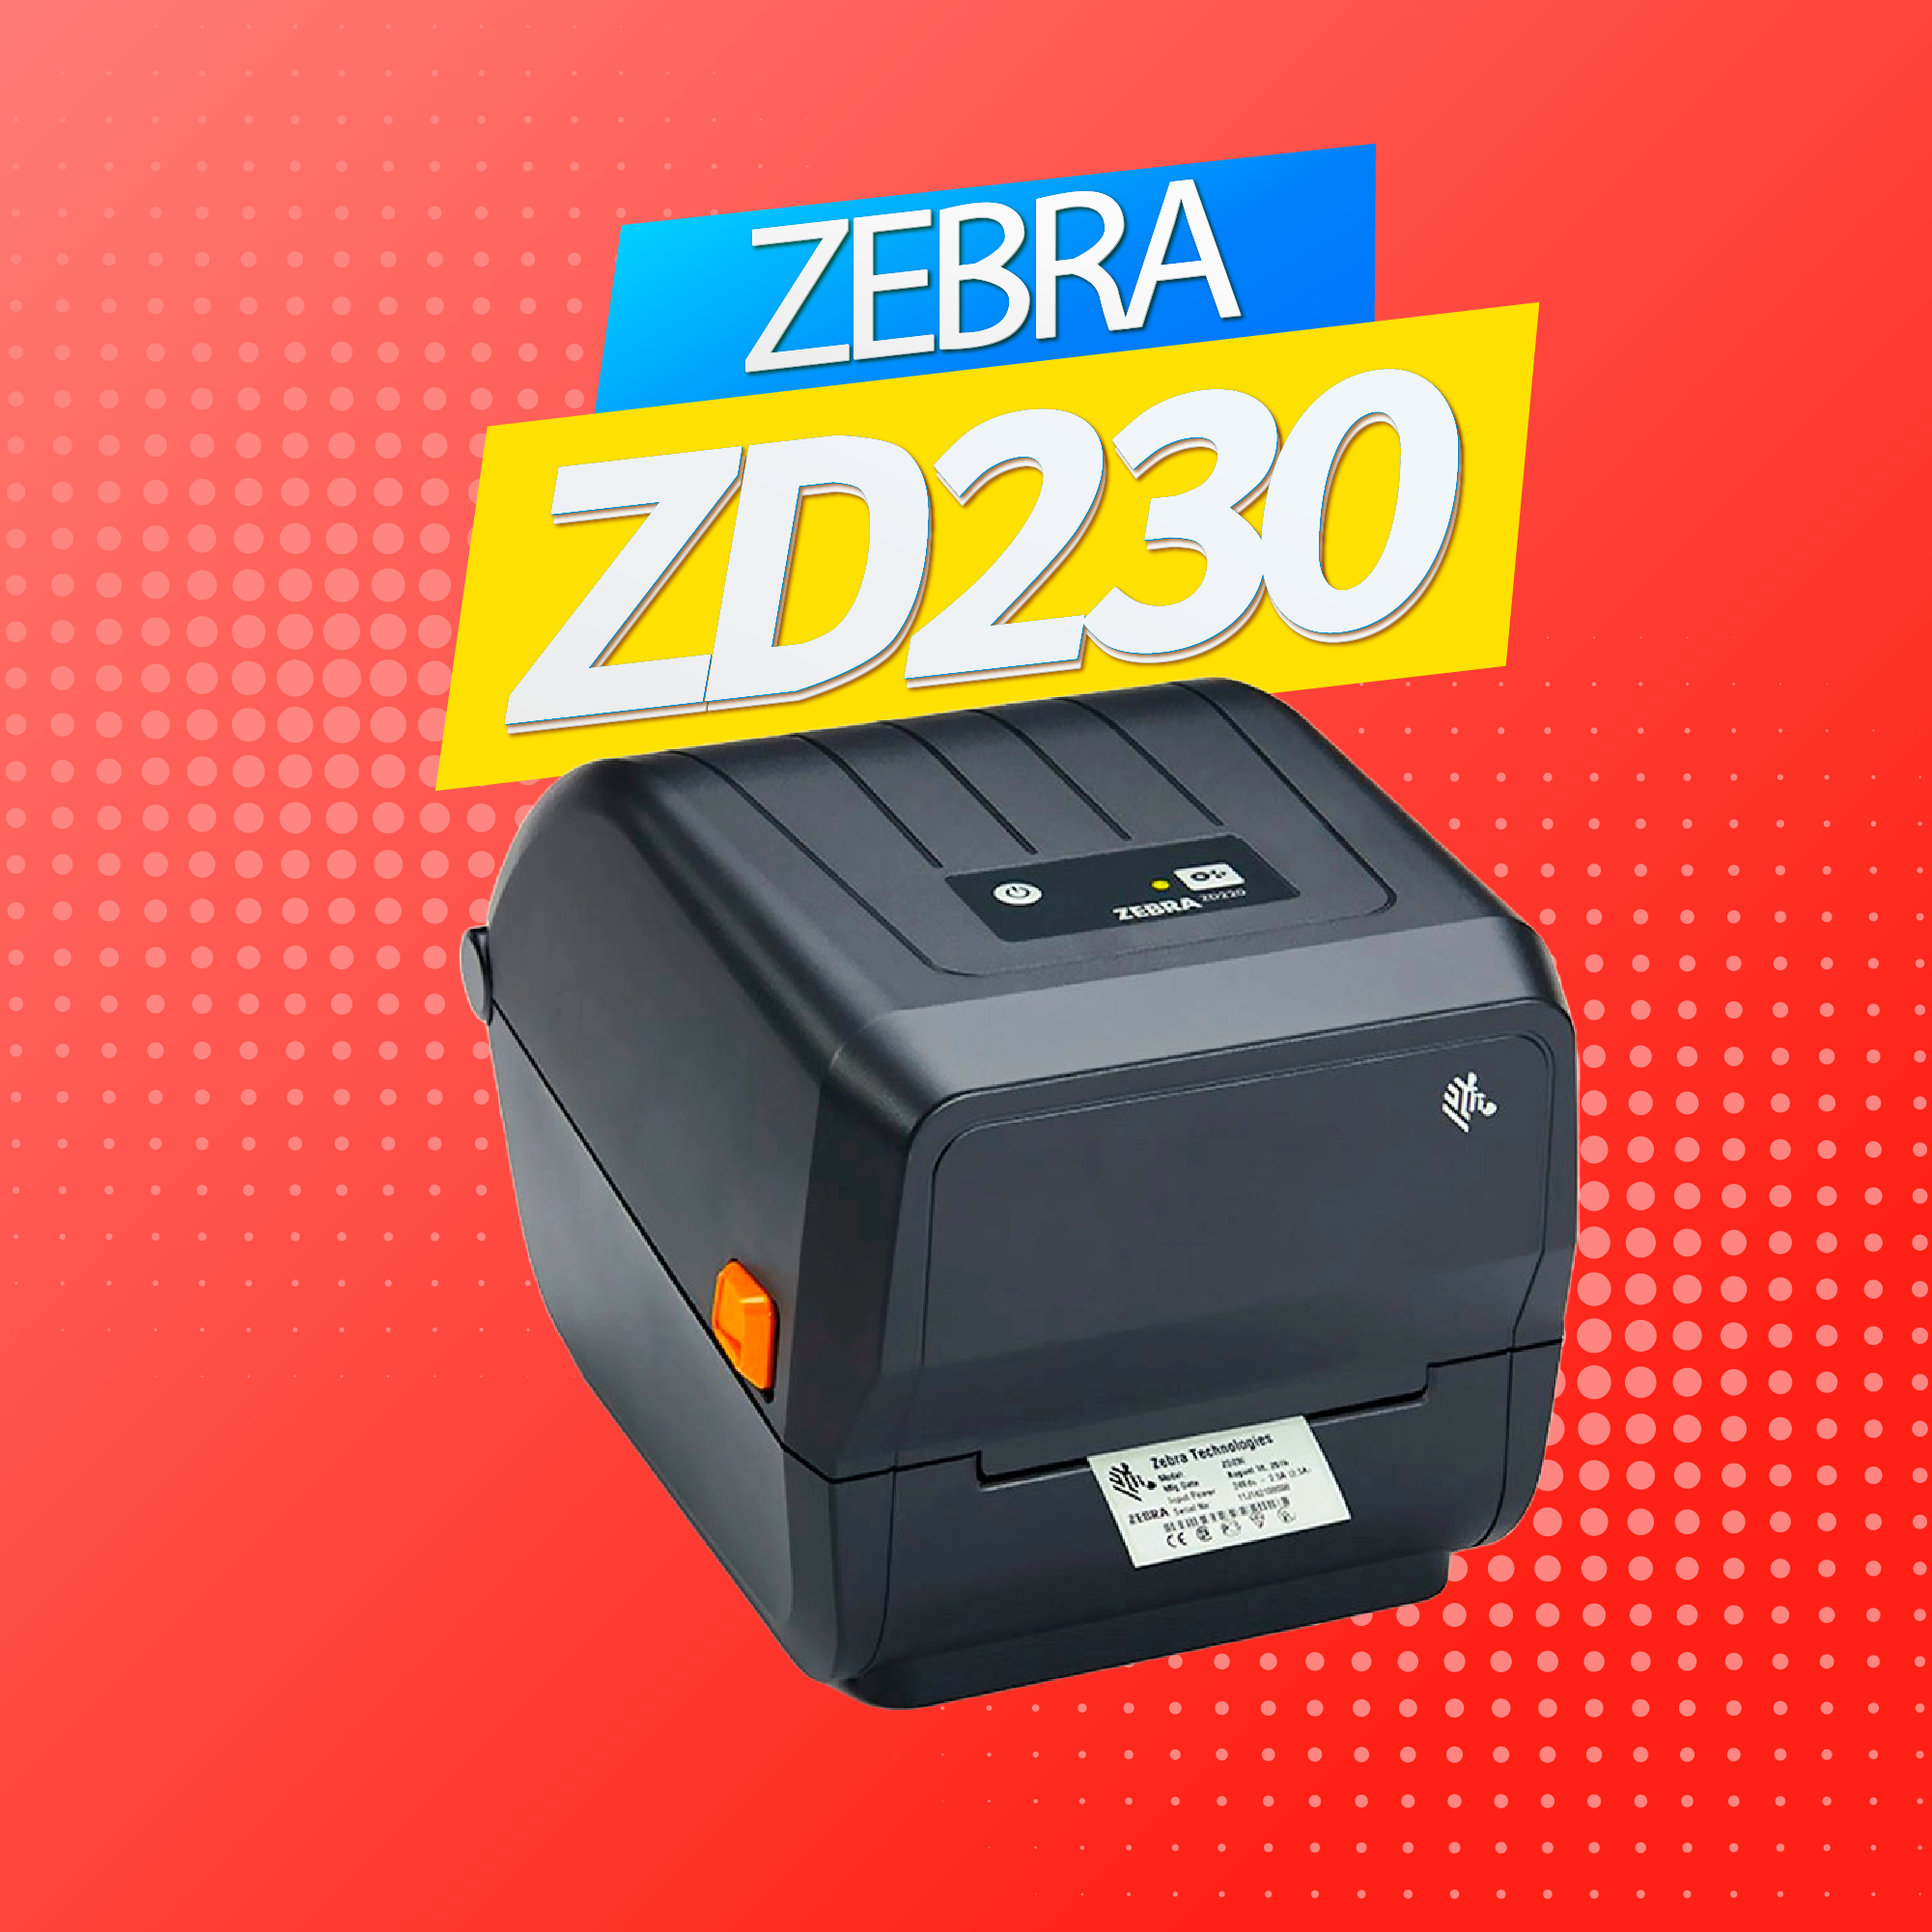 เครื่องปริ้นบาร์โค้ด Zebra ZD230 Printer Barcode